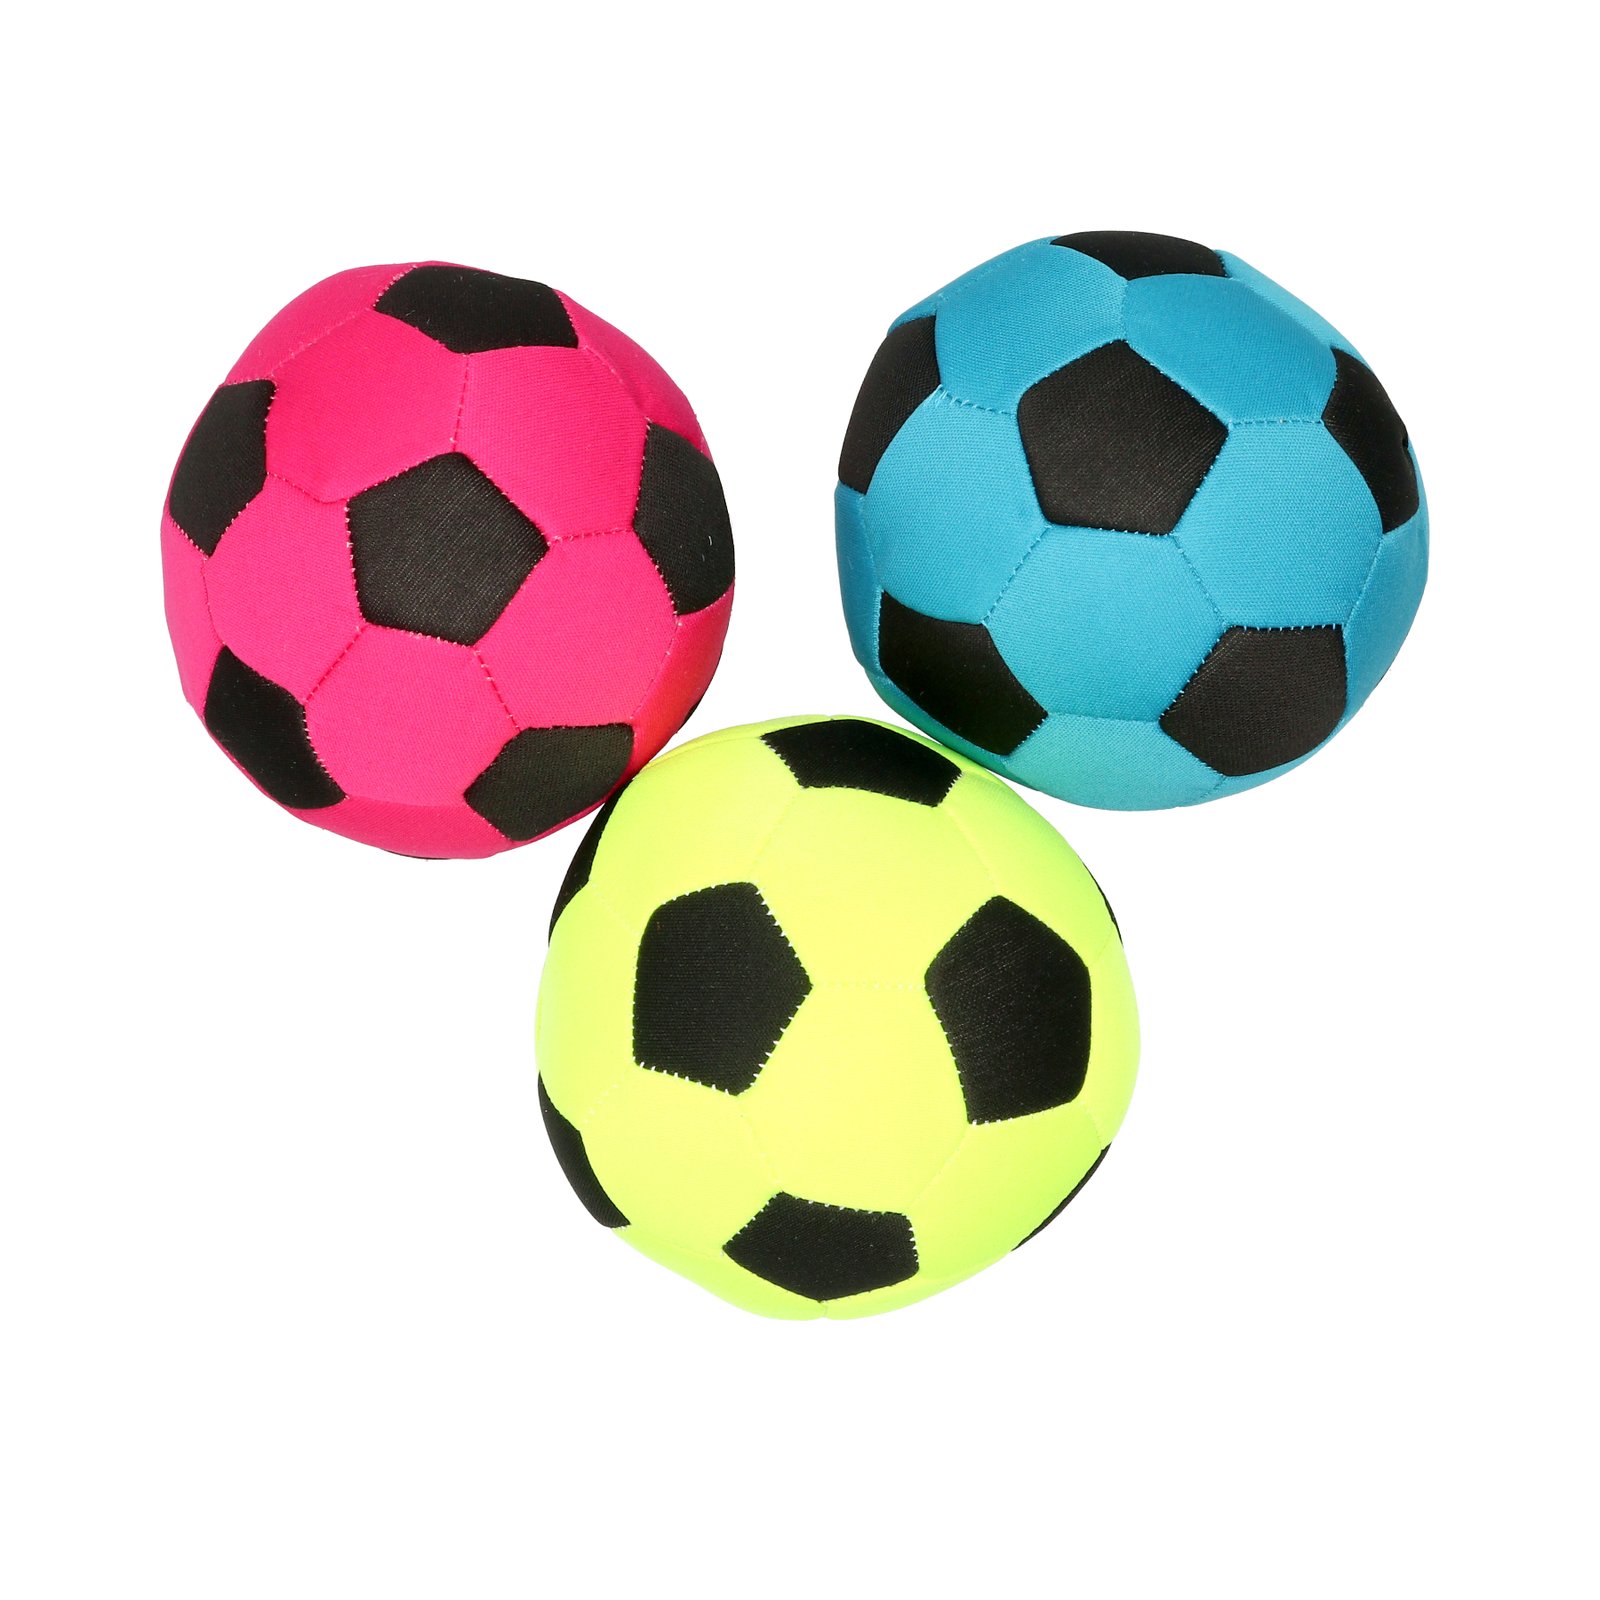 Dogman Fotboll för vattenlek 1 st - Olika färger